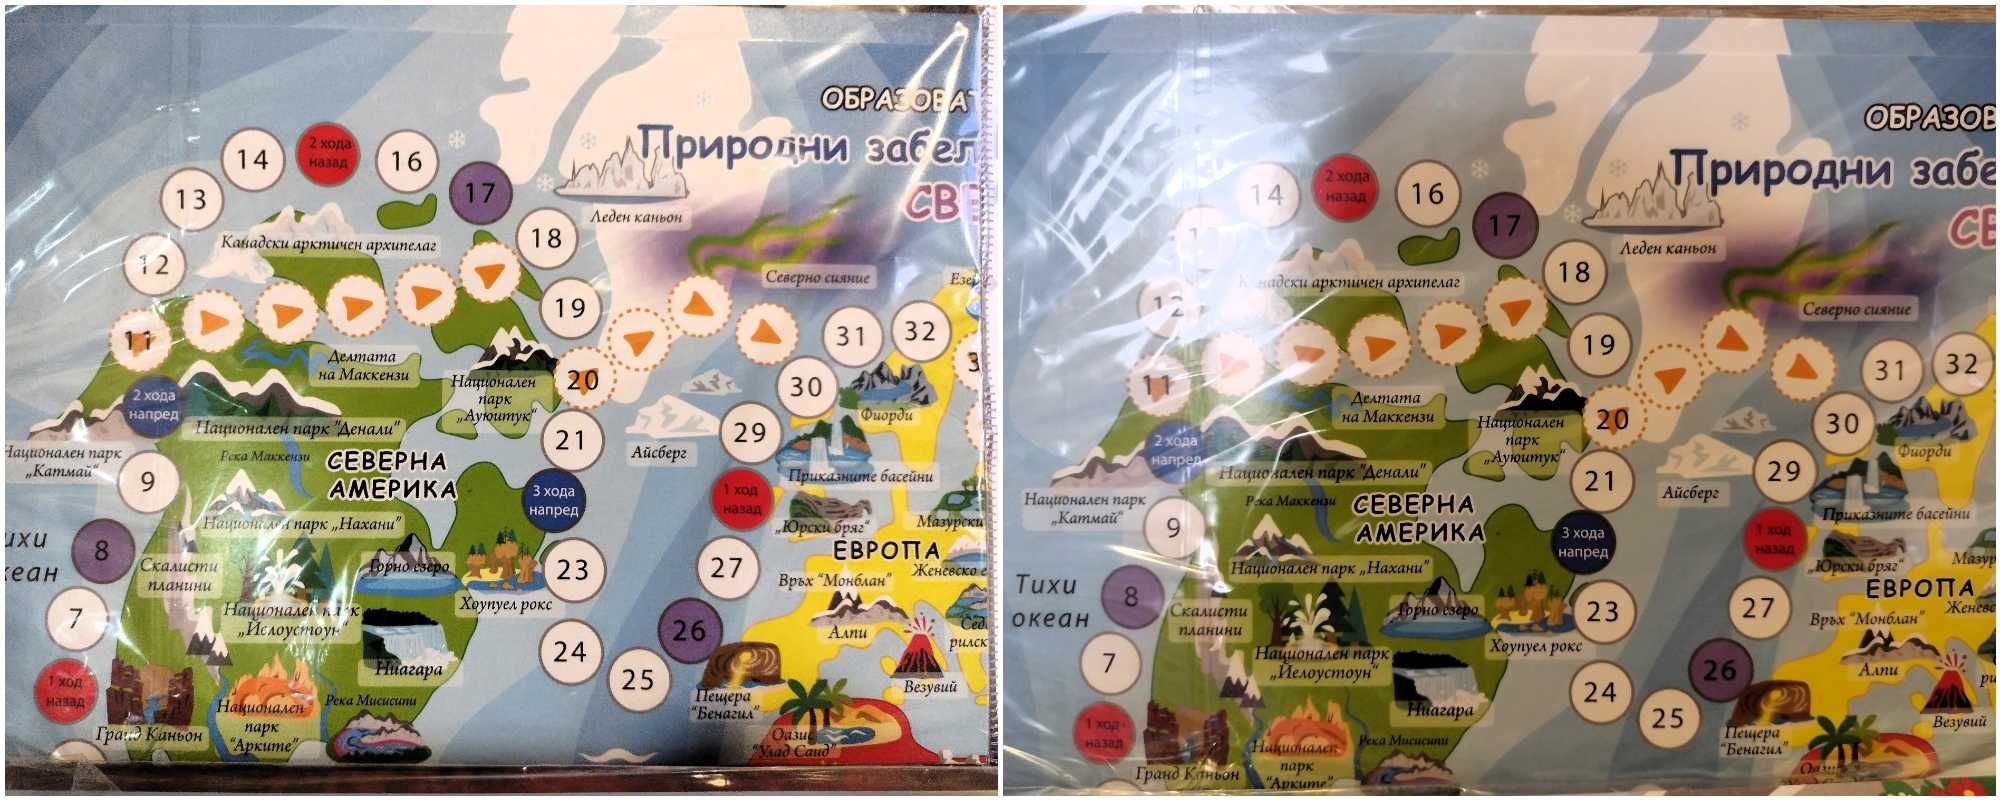 НОВО! Комплекти от 2 детски образователни игри - български